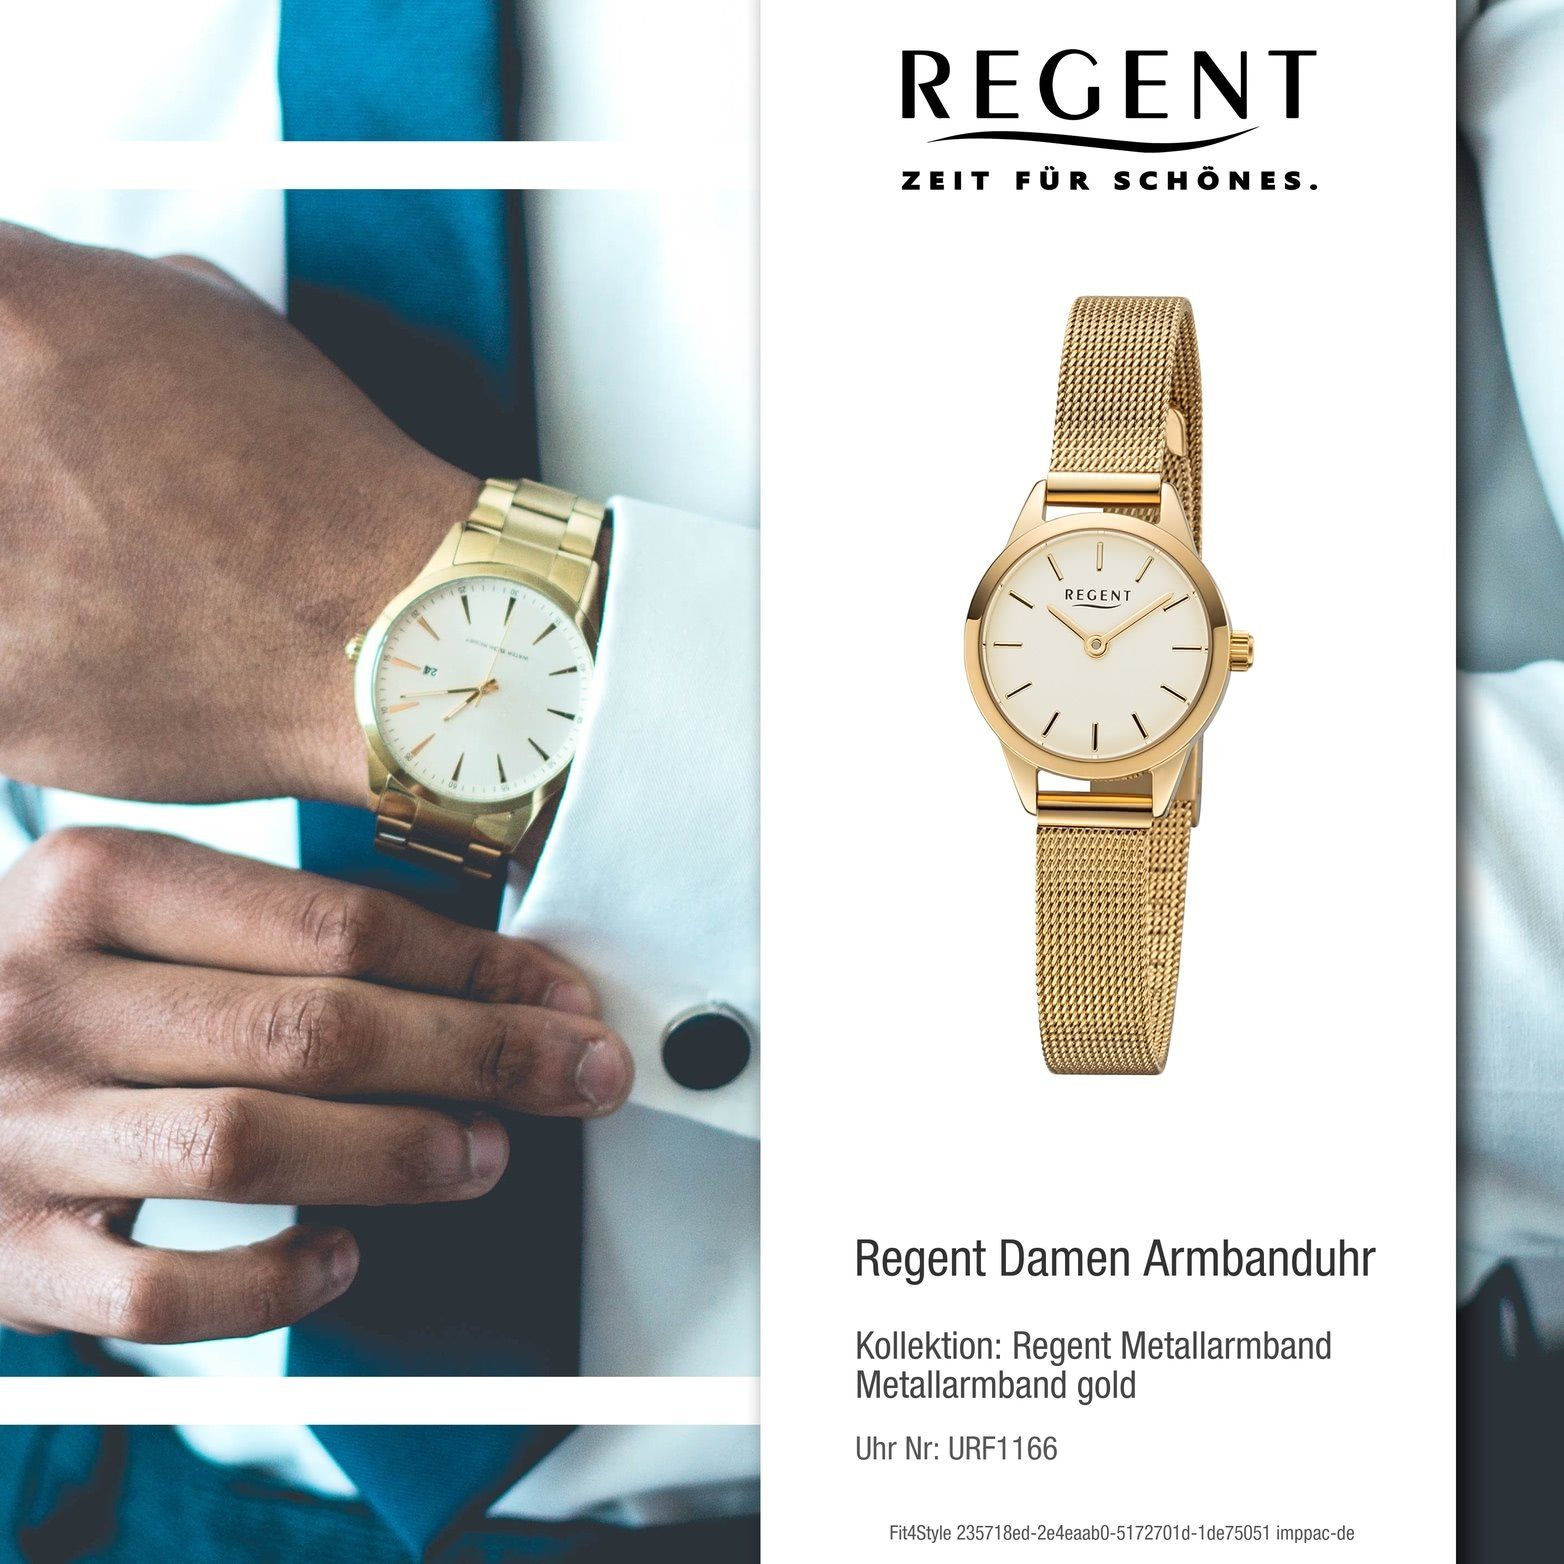 Gehäuse, (ca. Regent Metallarmband Uhr rundes Quarzuhr Damenuhr Regent F-1166 gold, klein Damen Analog, Metall 18mm)